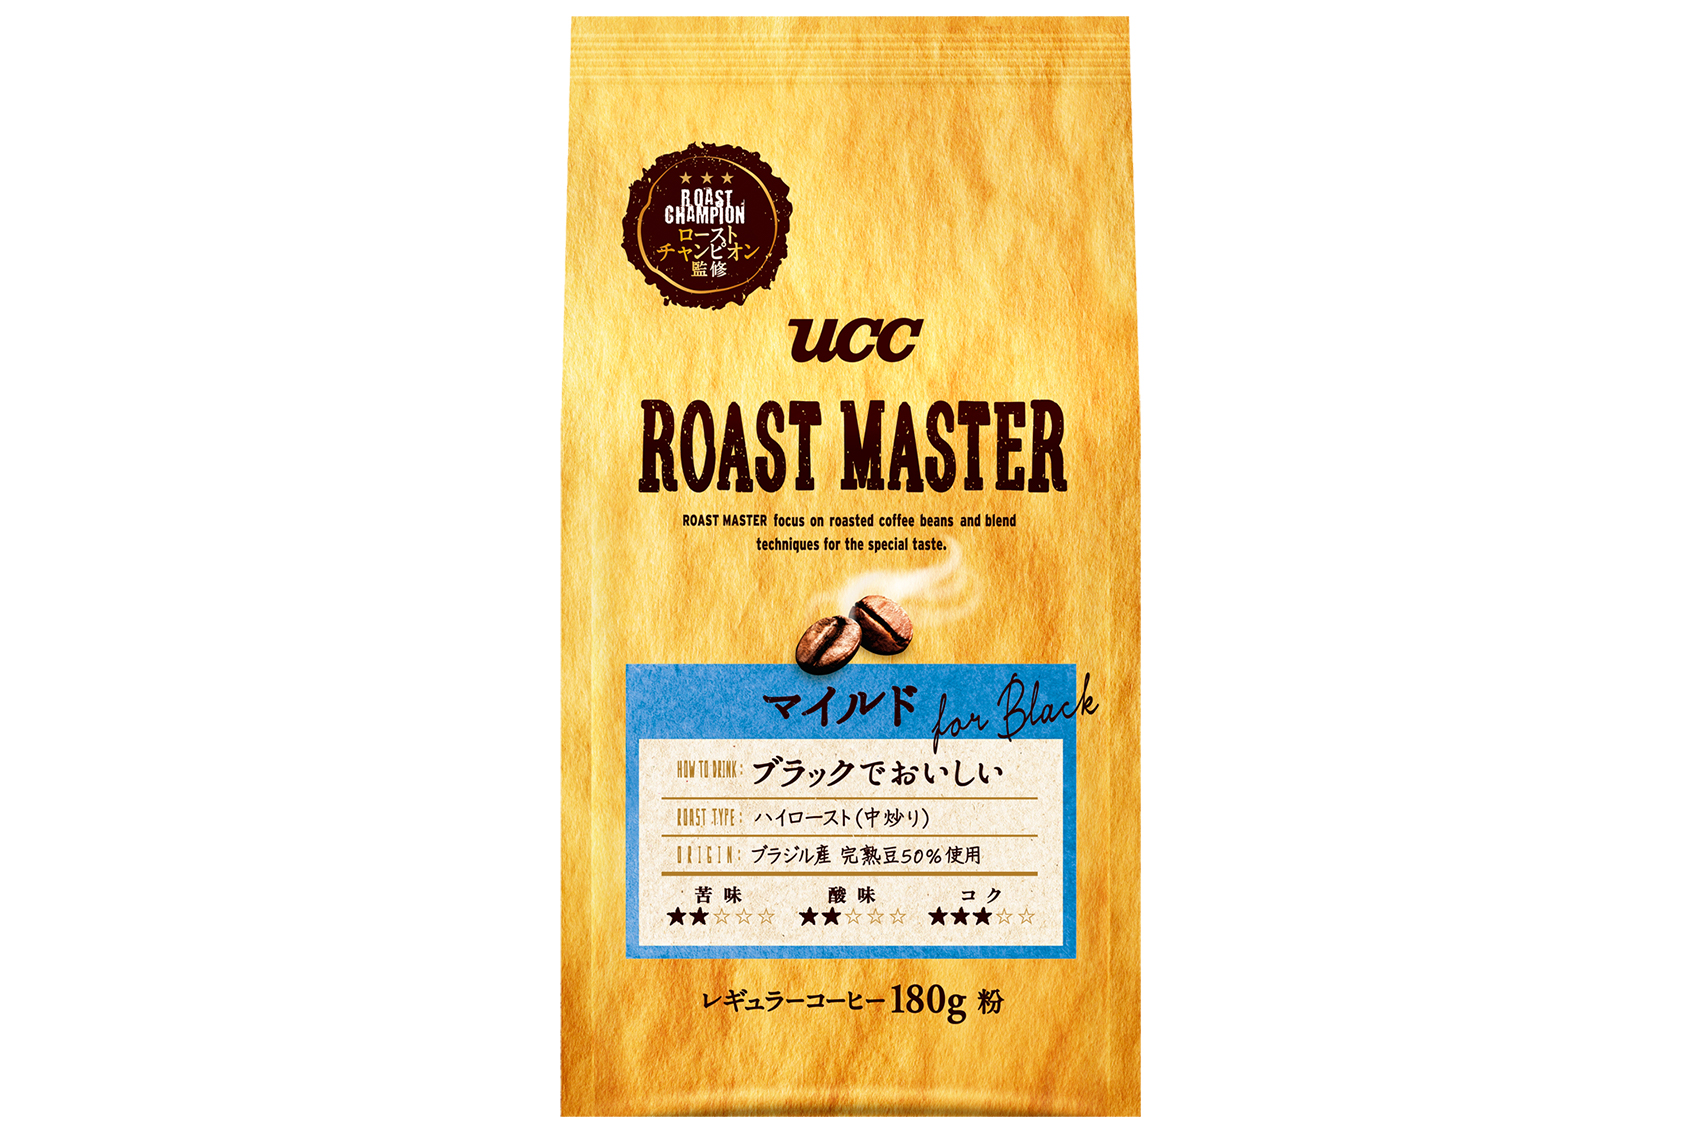 Uccローストチャンピオン Roast Master が提案する焙煎技術を駆使して作りあげたコーヒー Ucc Roast Master ブランド9月7日 月 より全国でリニューアル発売 コーヒーはucc上島珈琲